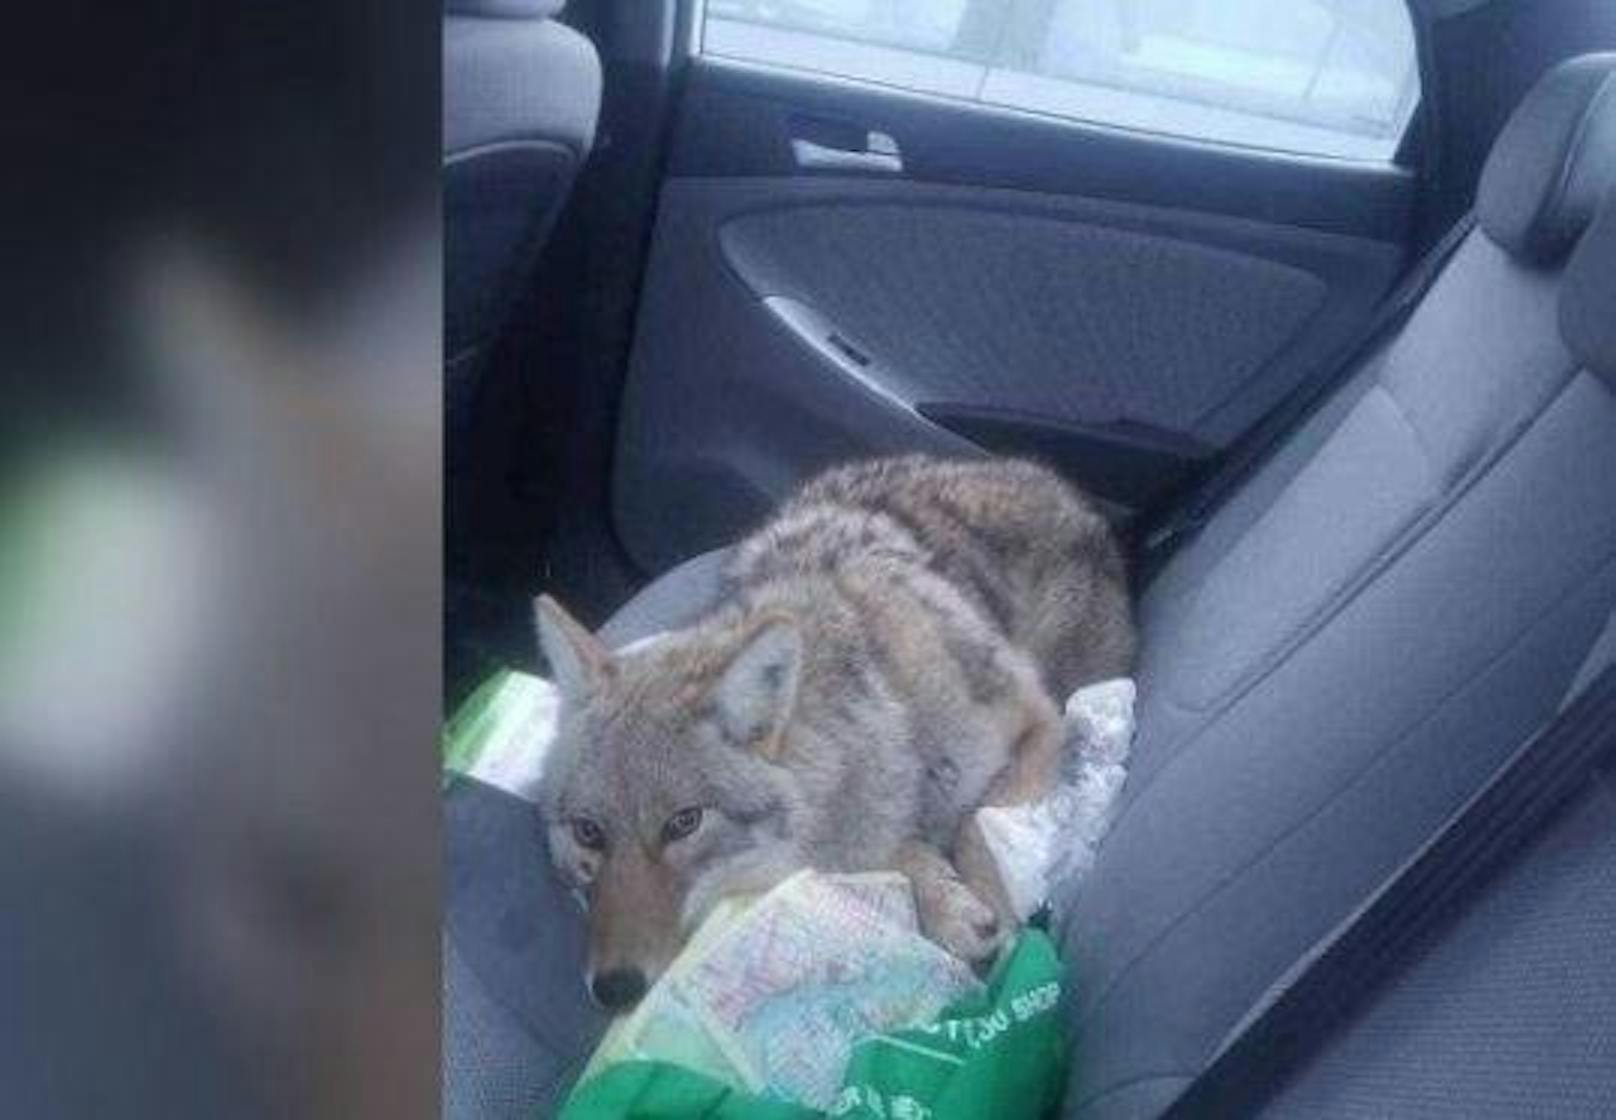 Dieser verletzte "Hund" entpuppte sich als Kojote. Autofahrer Eli Boroditsky fuhr das Wildtier an und nahm es anschließend mit, um ihm zu helfen.